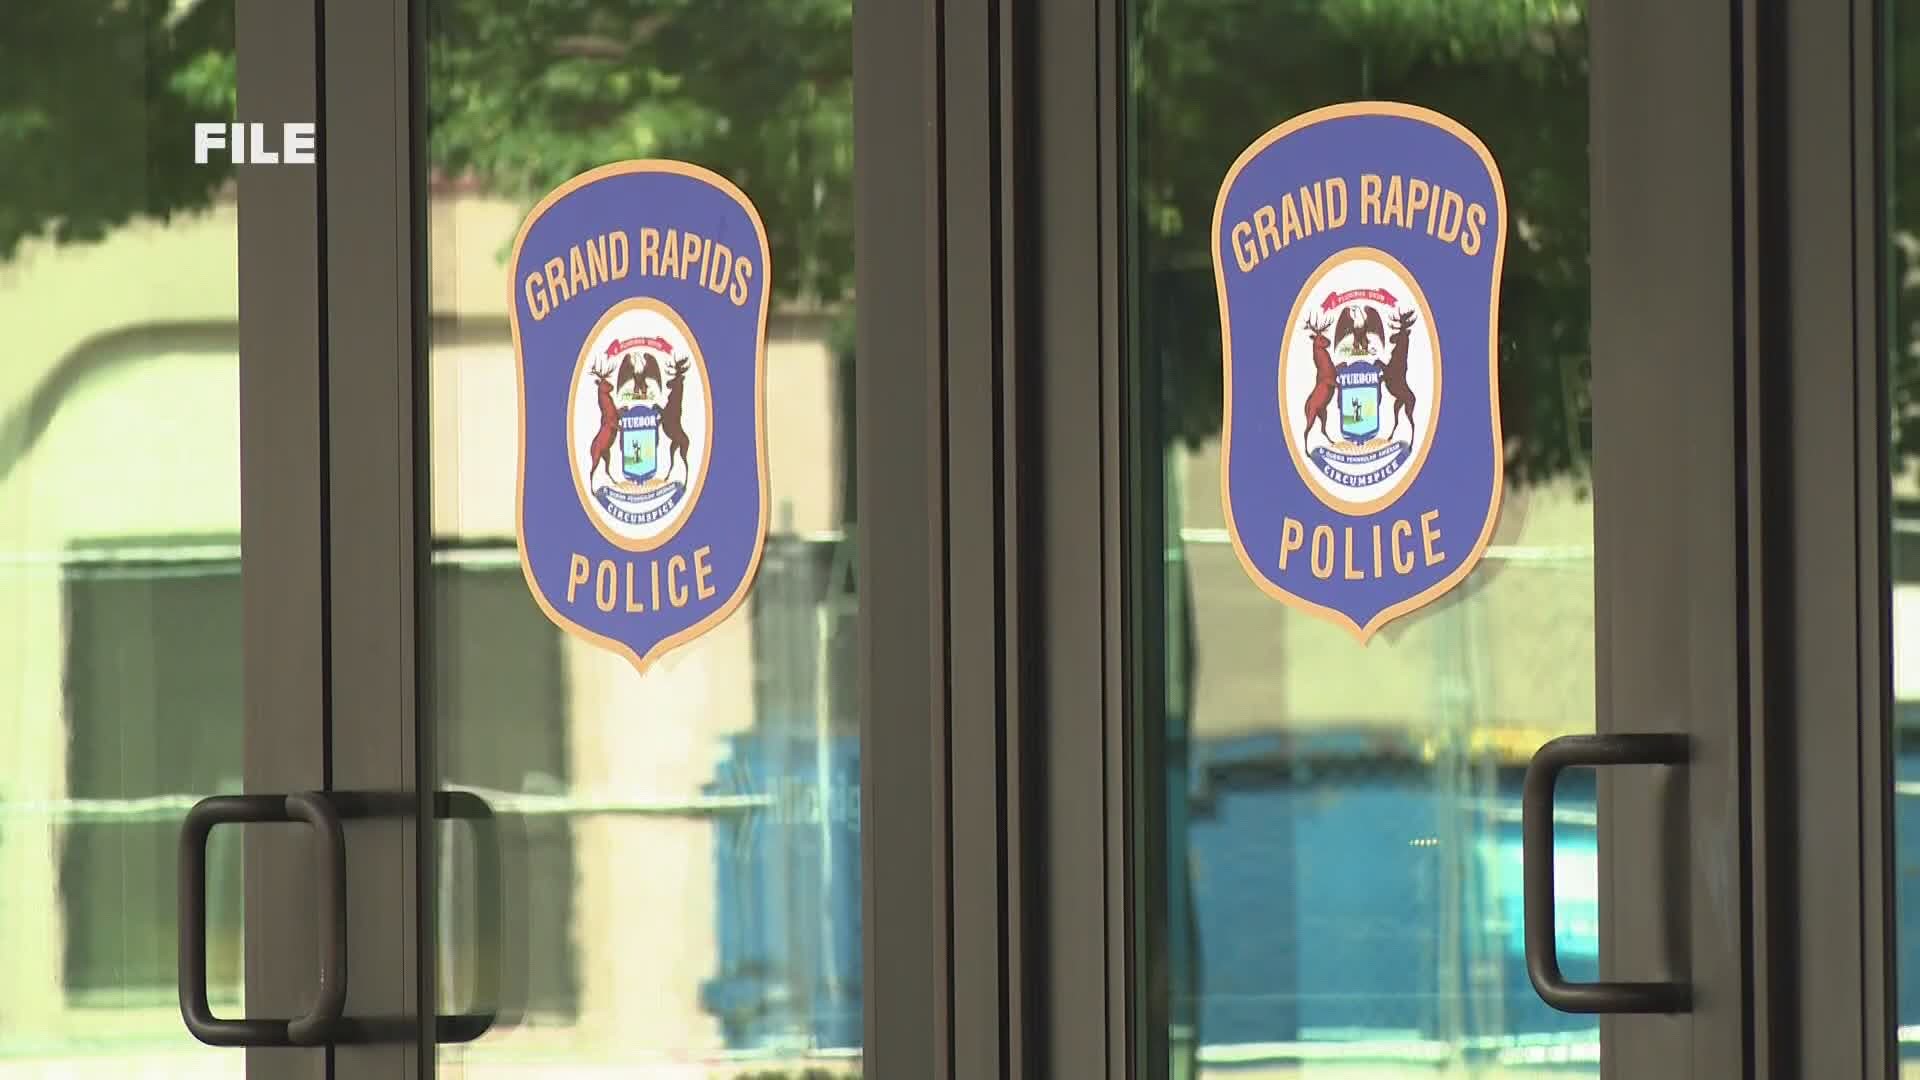 Grand Rapids announces timeline for public safety improvements